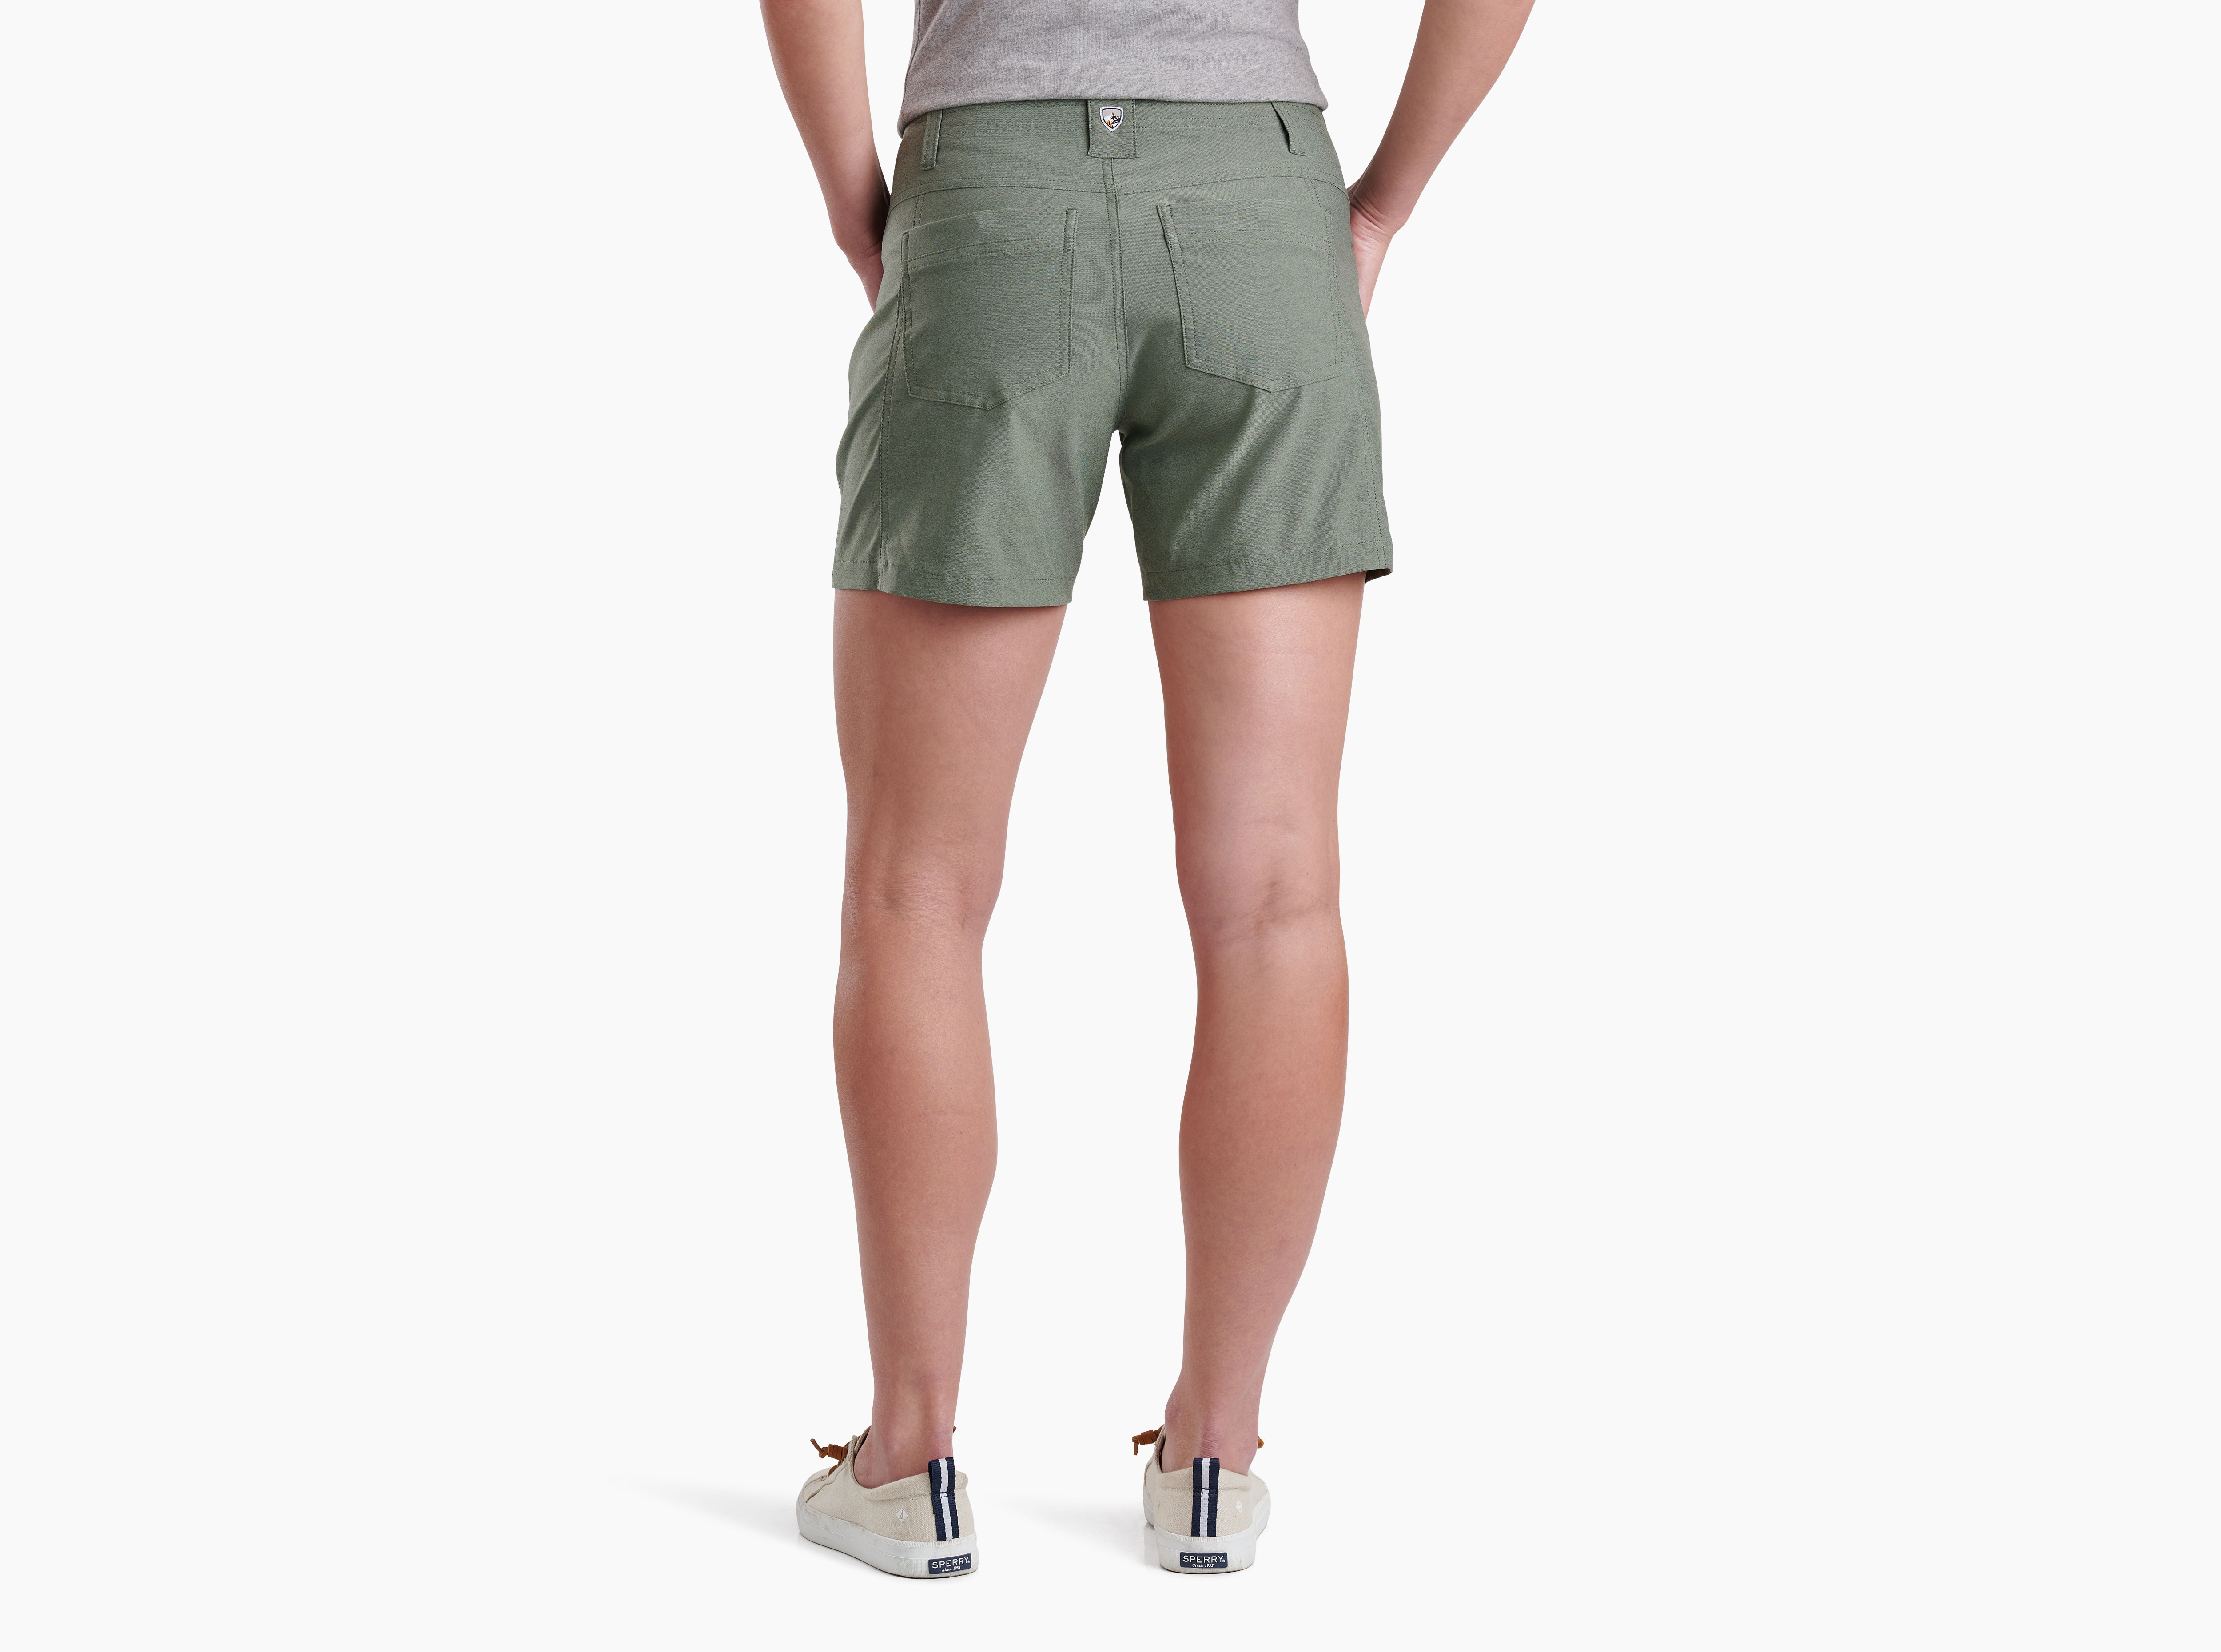 Kuhl Women's Free Range Hiking Shorts - 6 1/2